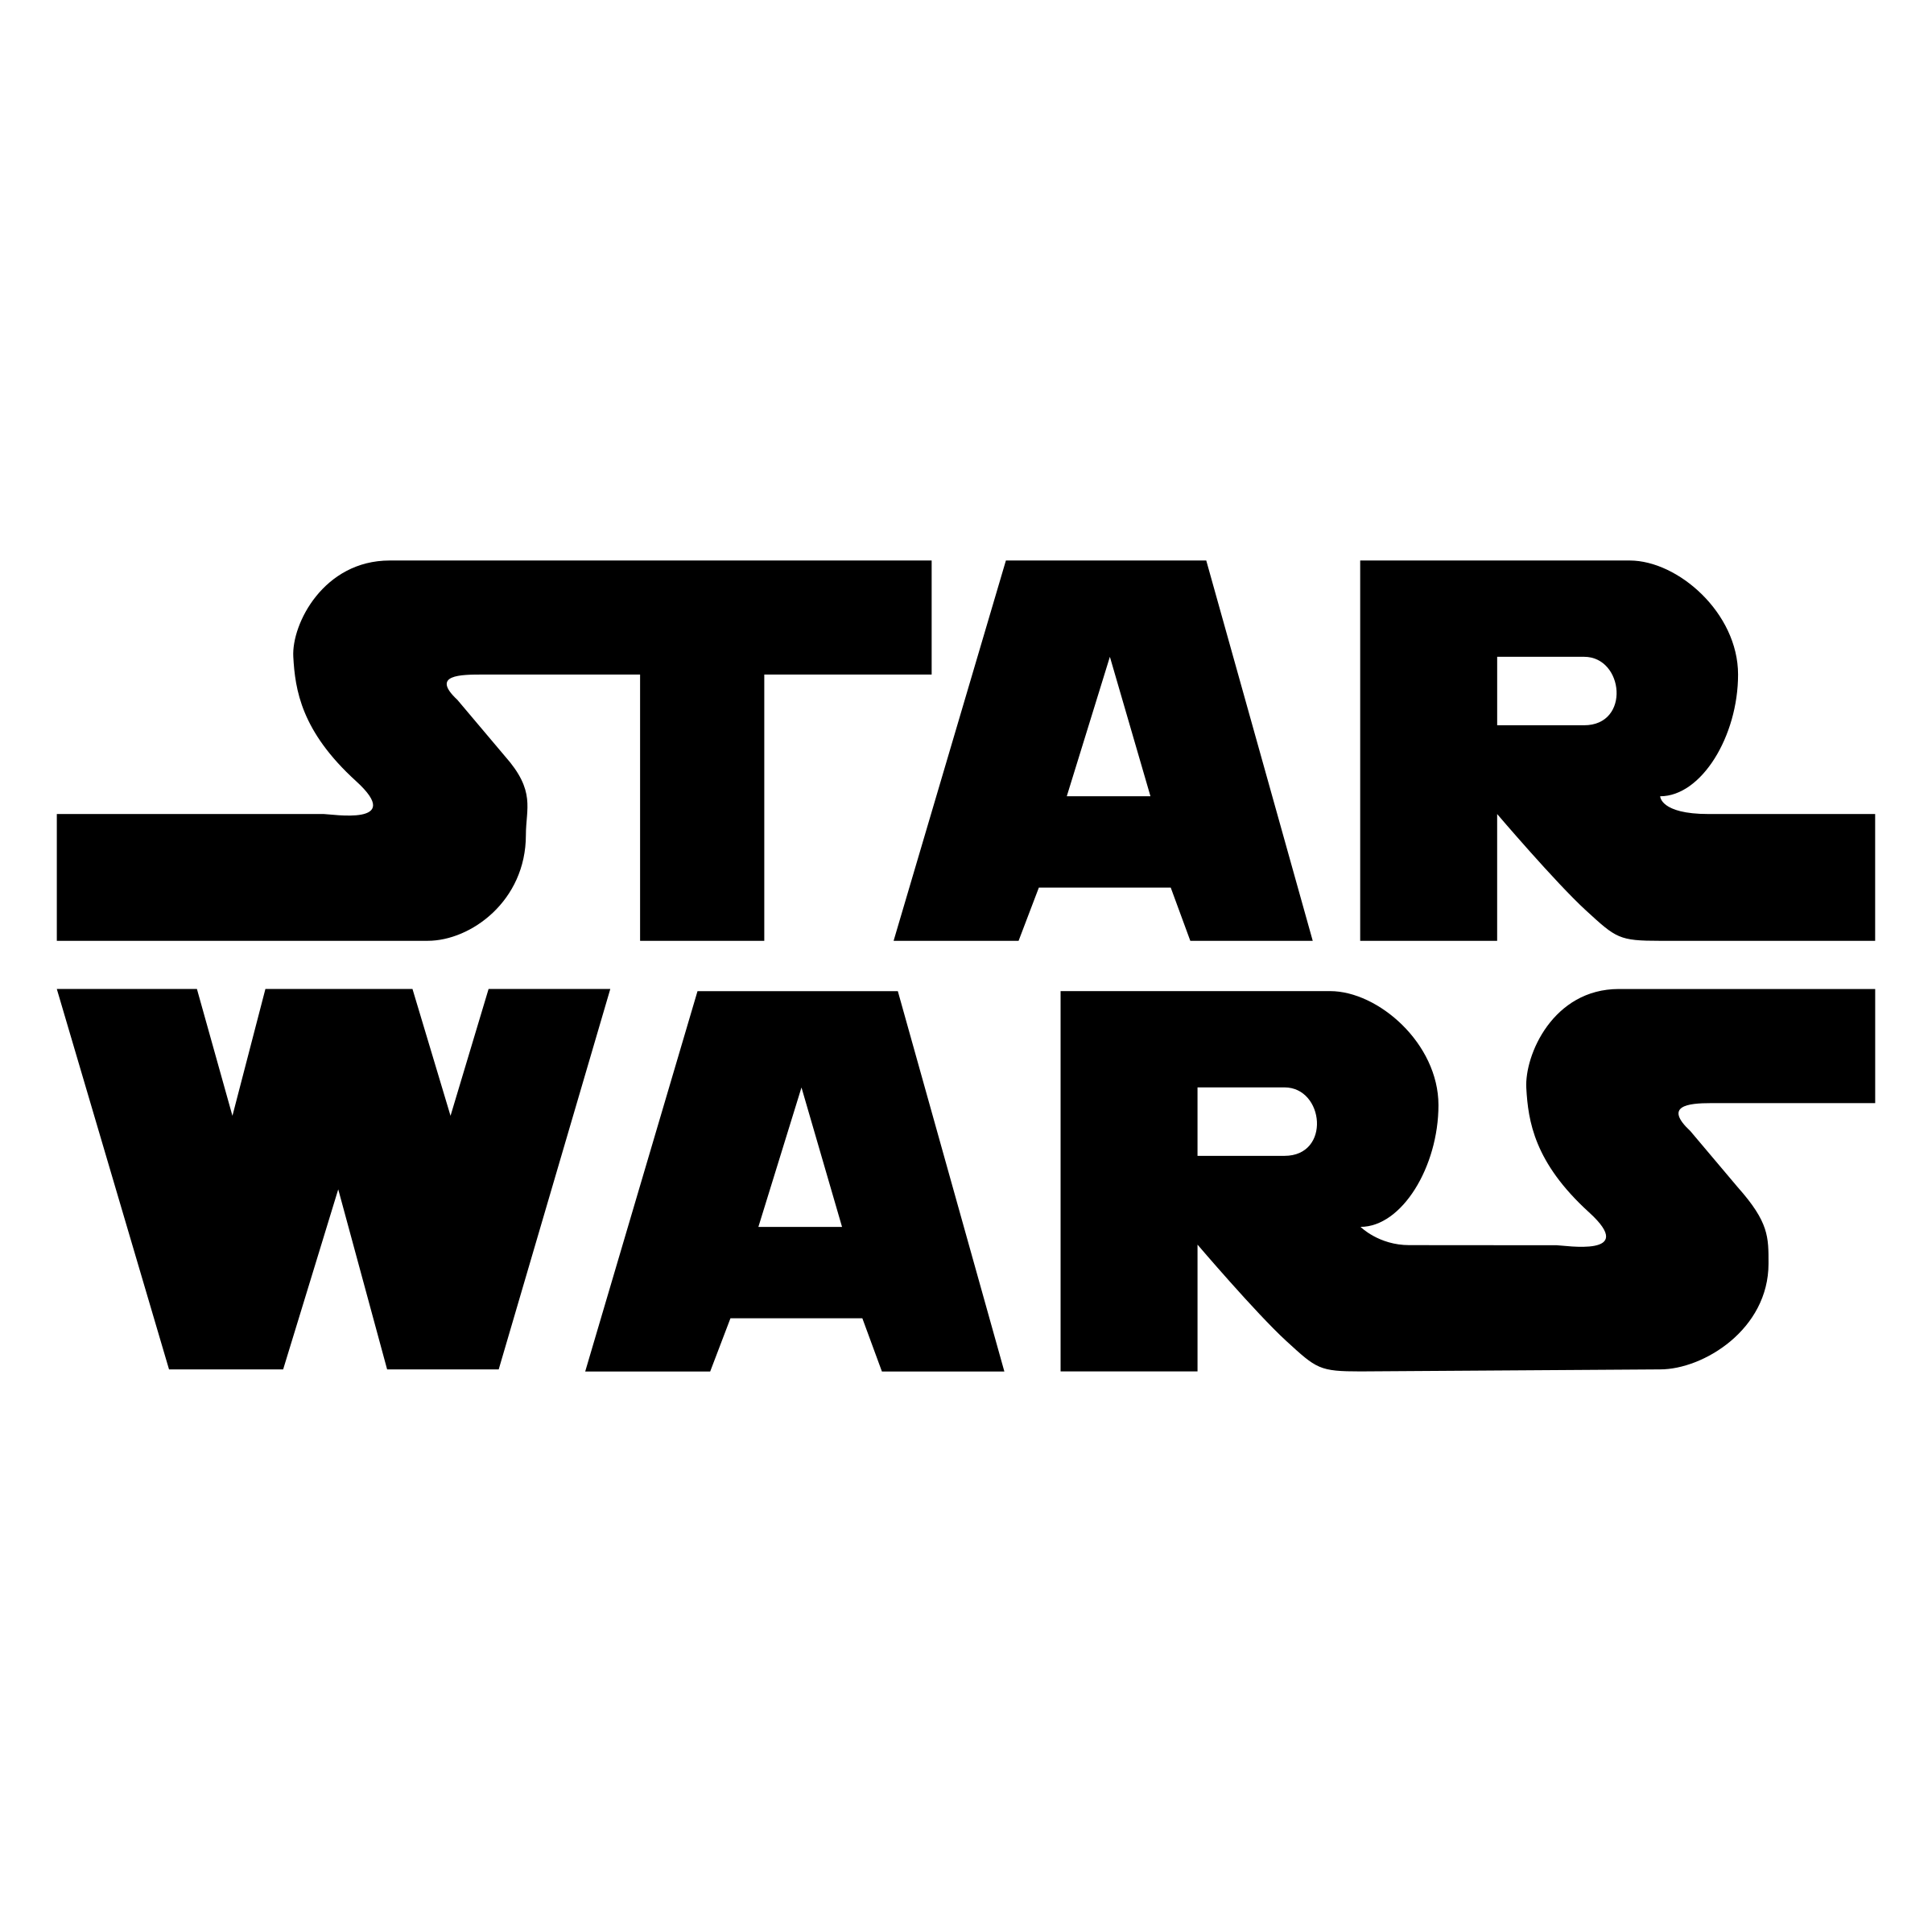 Star Wars Logo - Star Wars Logo PNG Transparent & SVG Vector